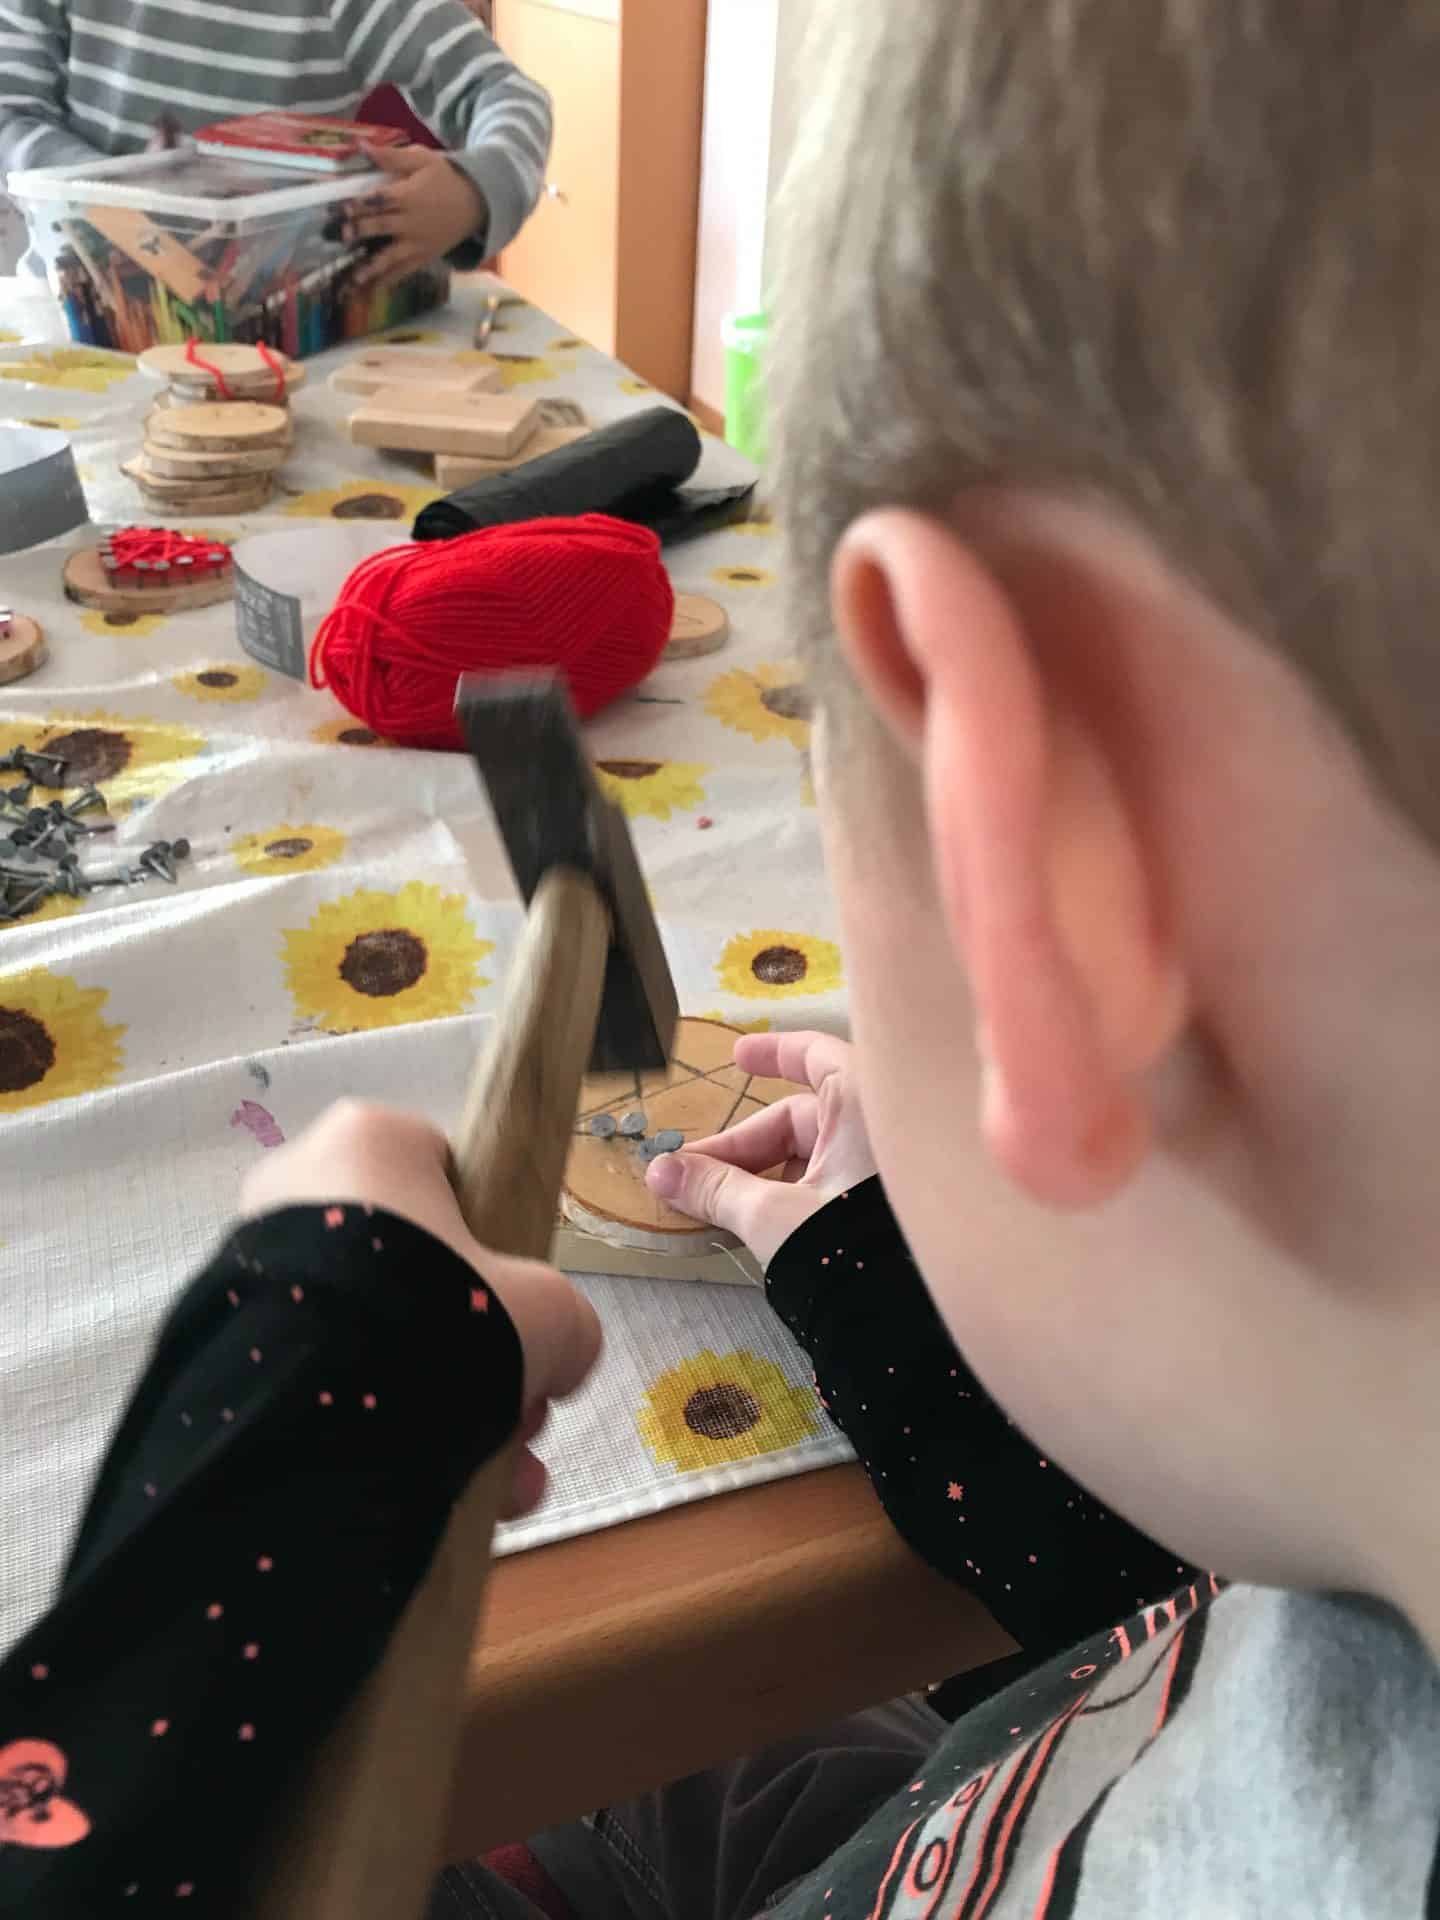 Kinderbetreuung in der FeBg: Ein Kind arbeitet mit einem Hammer